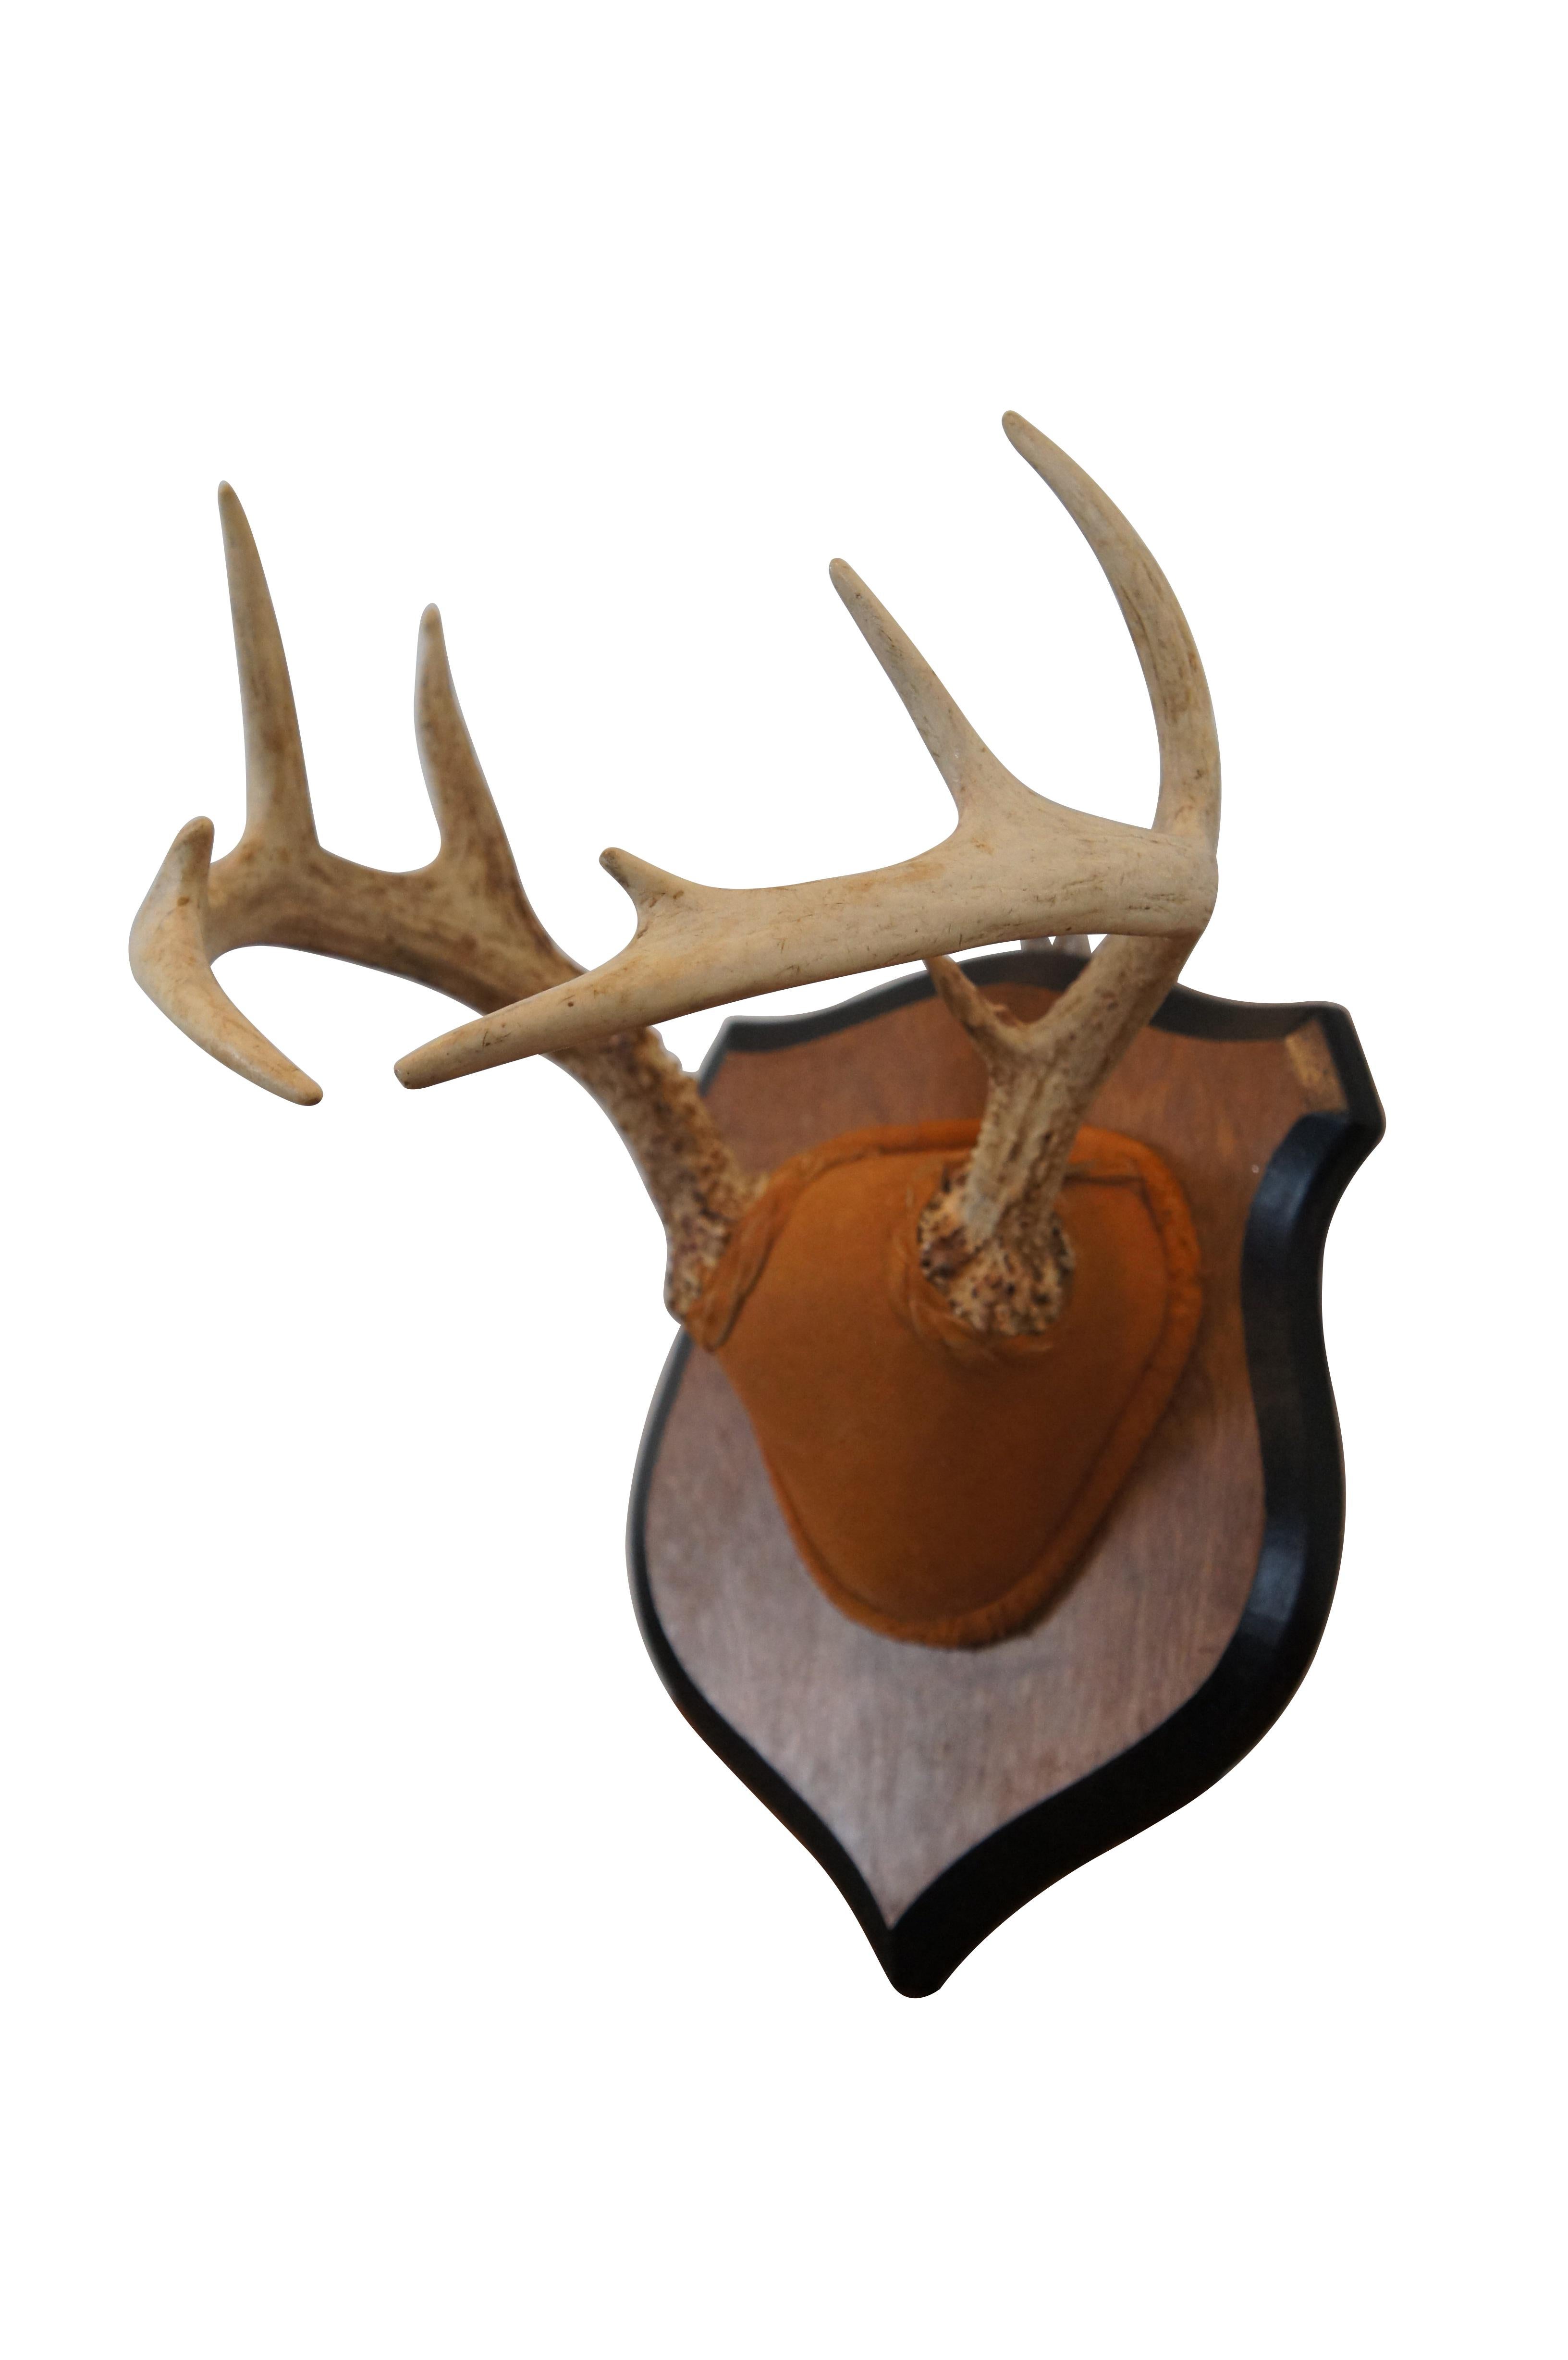 Vintage taxidermy Trophäe eines zehn Punkt Hirschgeweih Rack mit Wildleder über den Schädel Kappe, montiert auf einem heraldischen Schild Plaque.

Abmessungen:
9